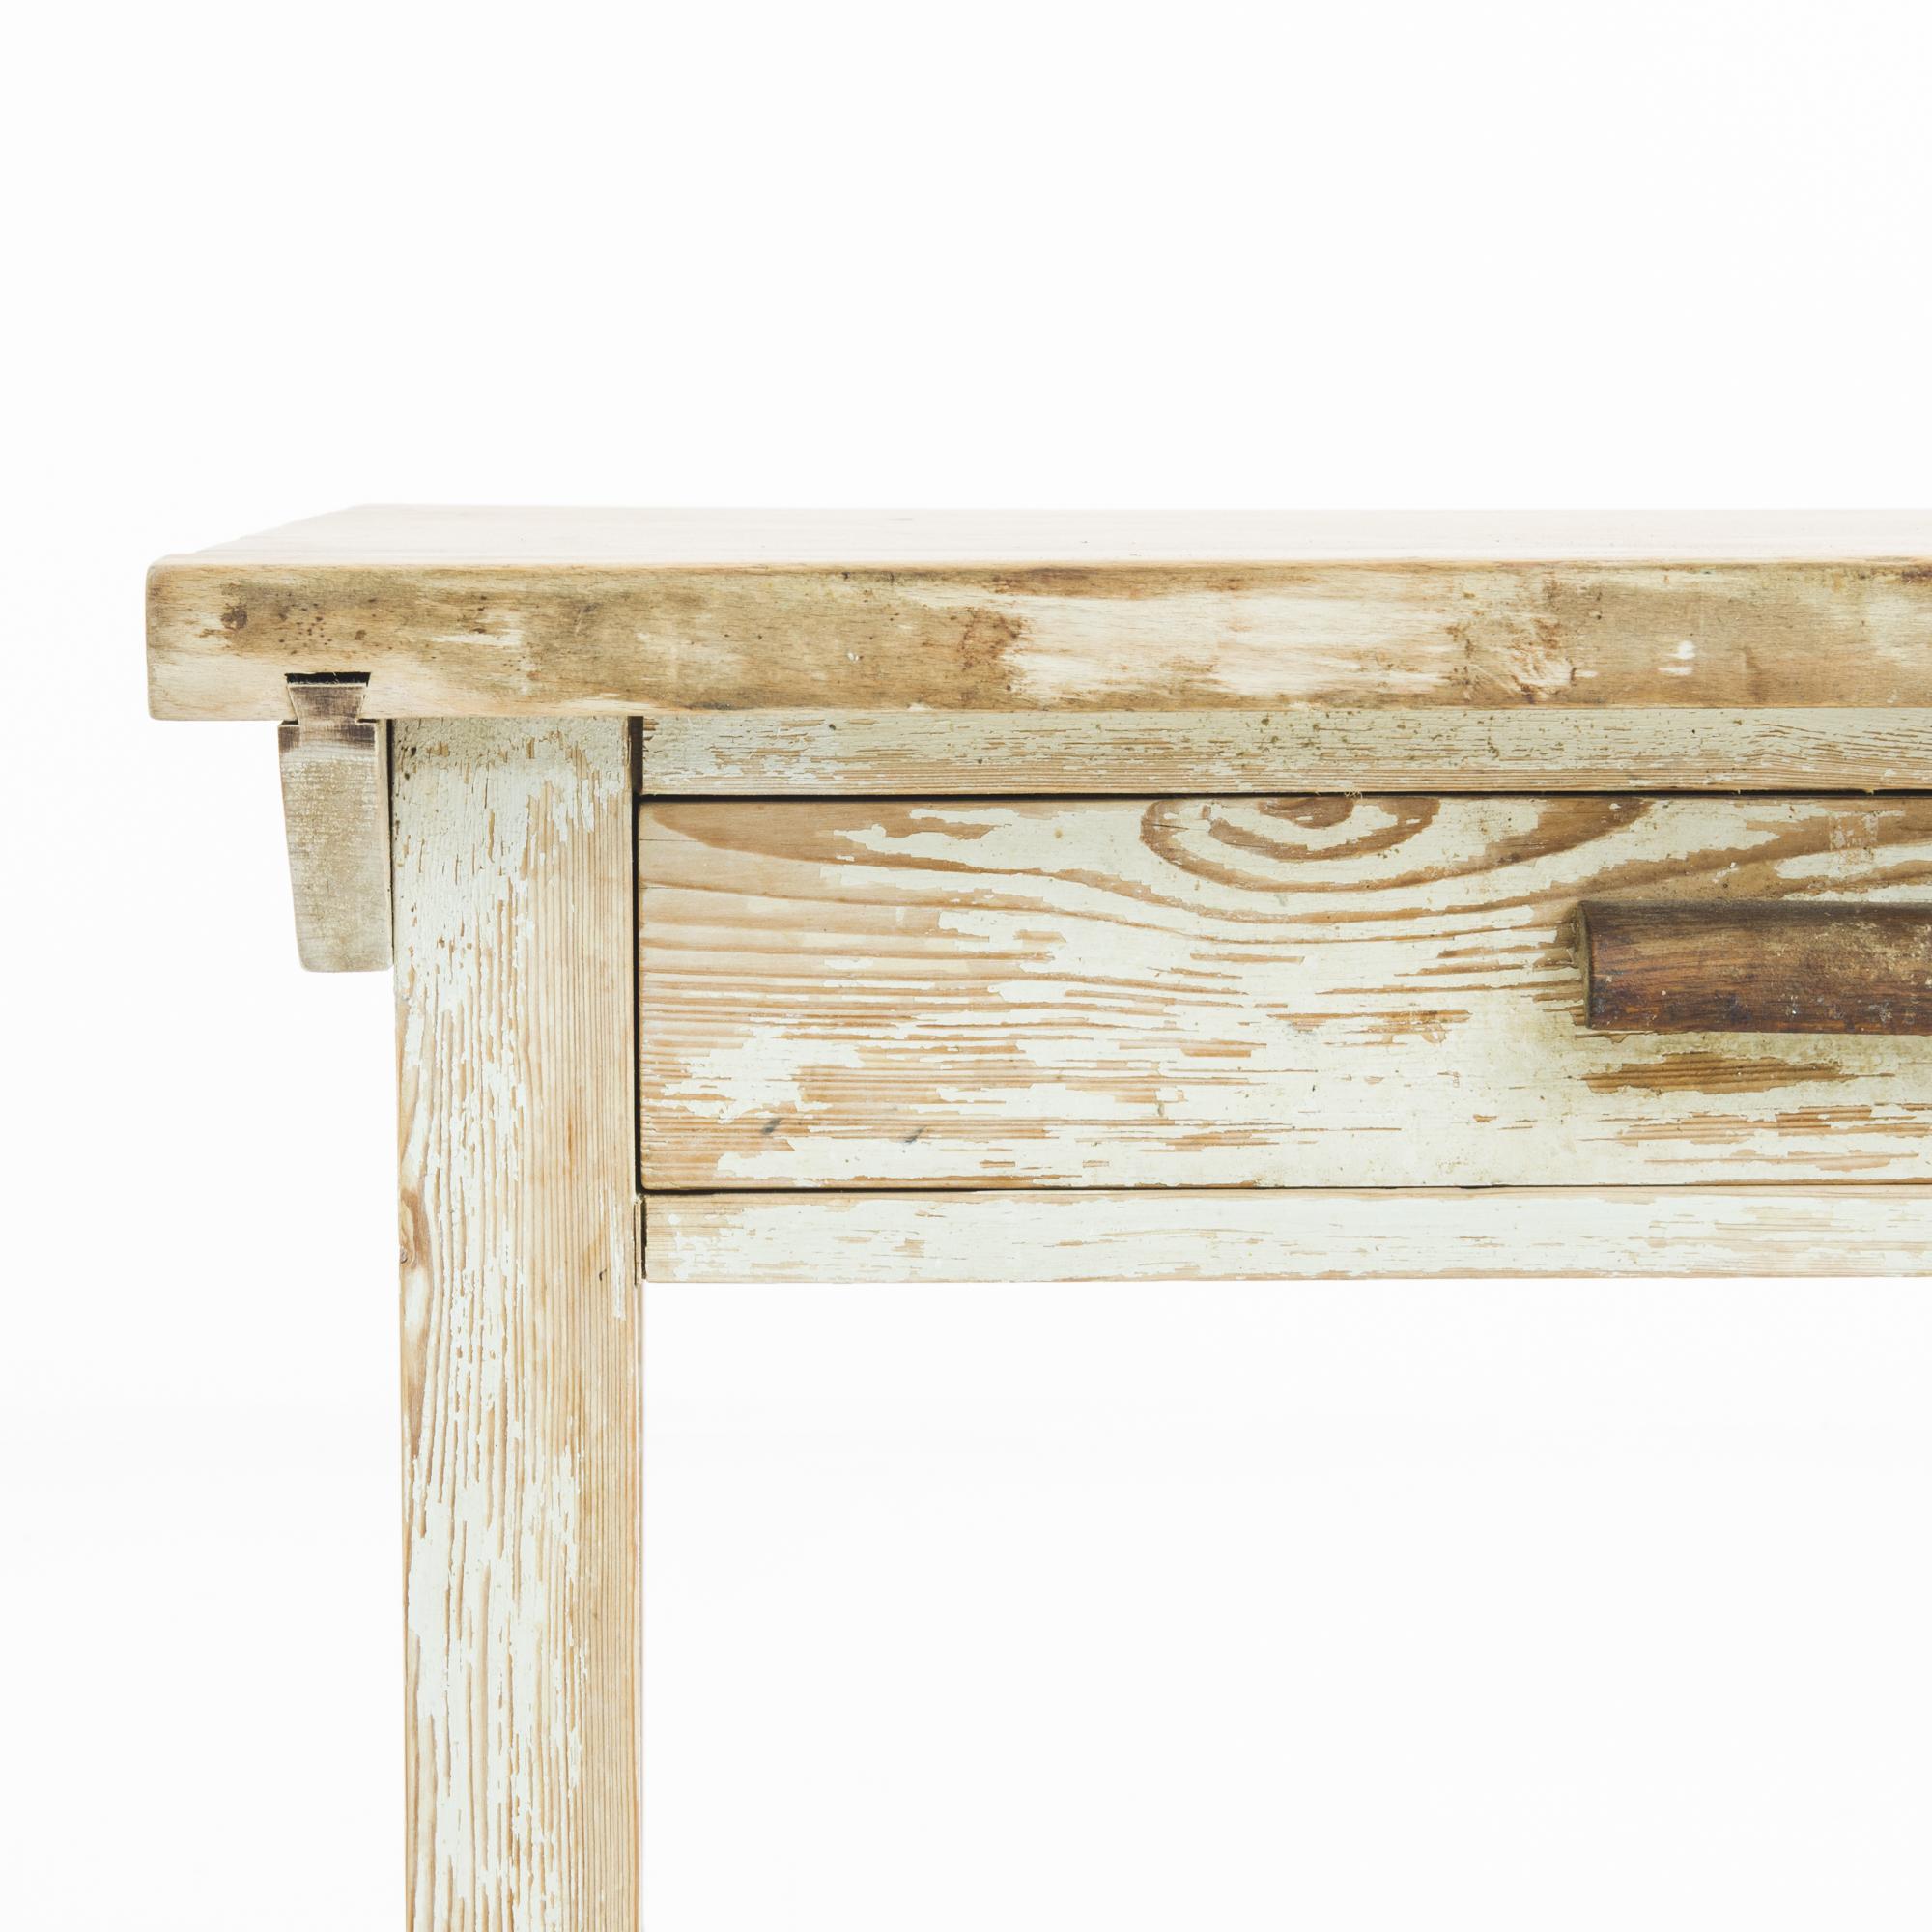 Ein Holztisch aus der Tschechischen Republik, hergestellt um 1930. Ein rustikaler Beistelltisch in pragmatischen Proportionen mit einer dicken Tischplatte, einer Schiebeschublade mit Holzgriff und einem unteren Regal aus Holzlatten. Weiß